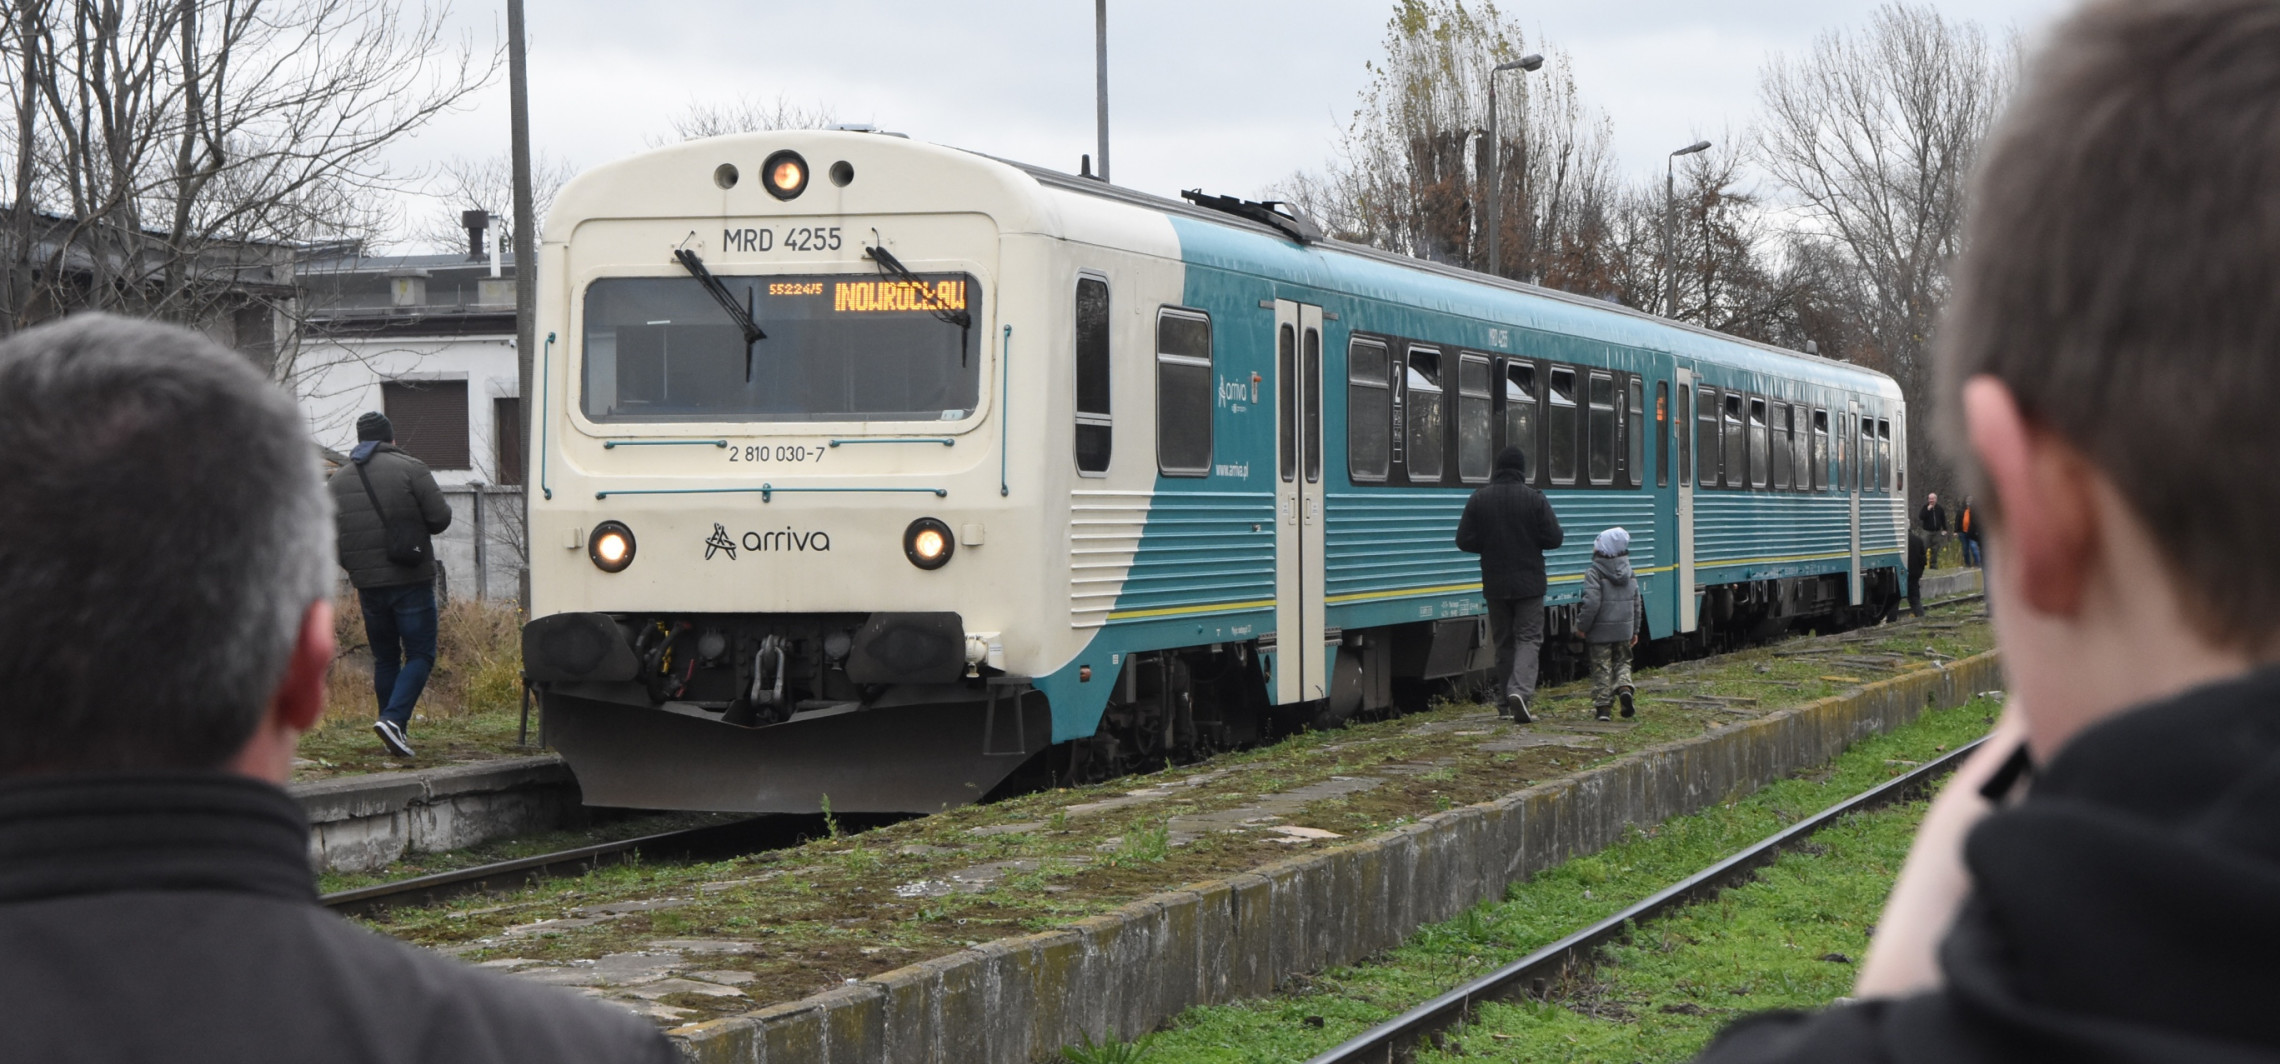 Inowrocław - Tędy przejechał pociąg, jak przed laty